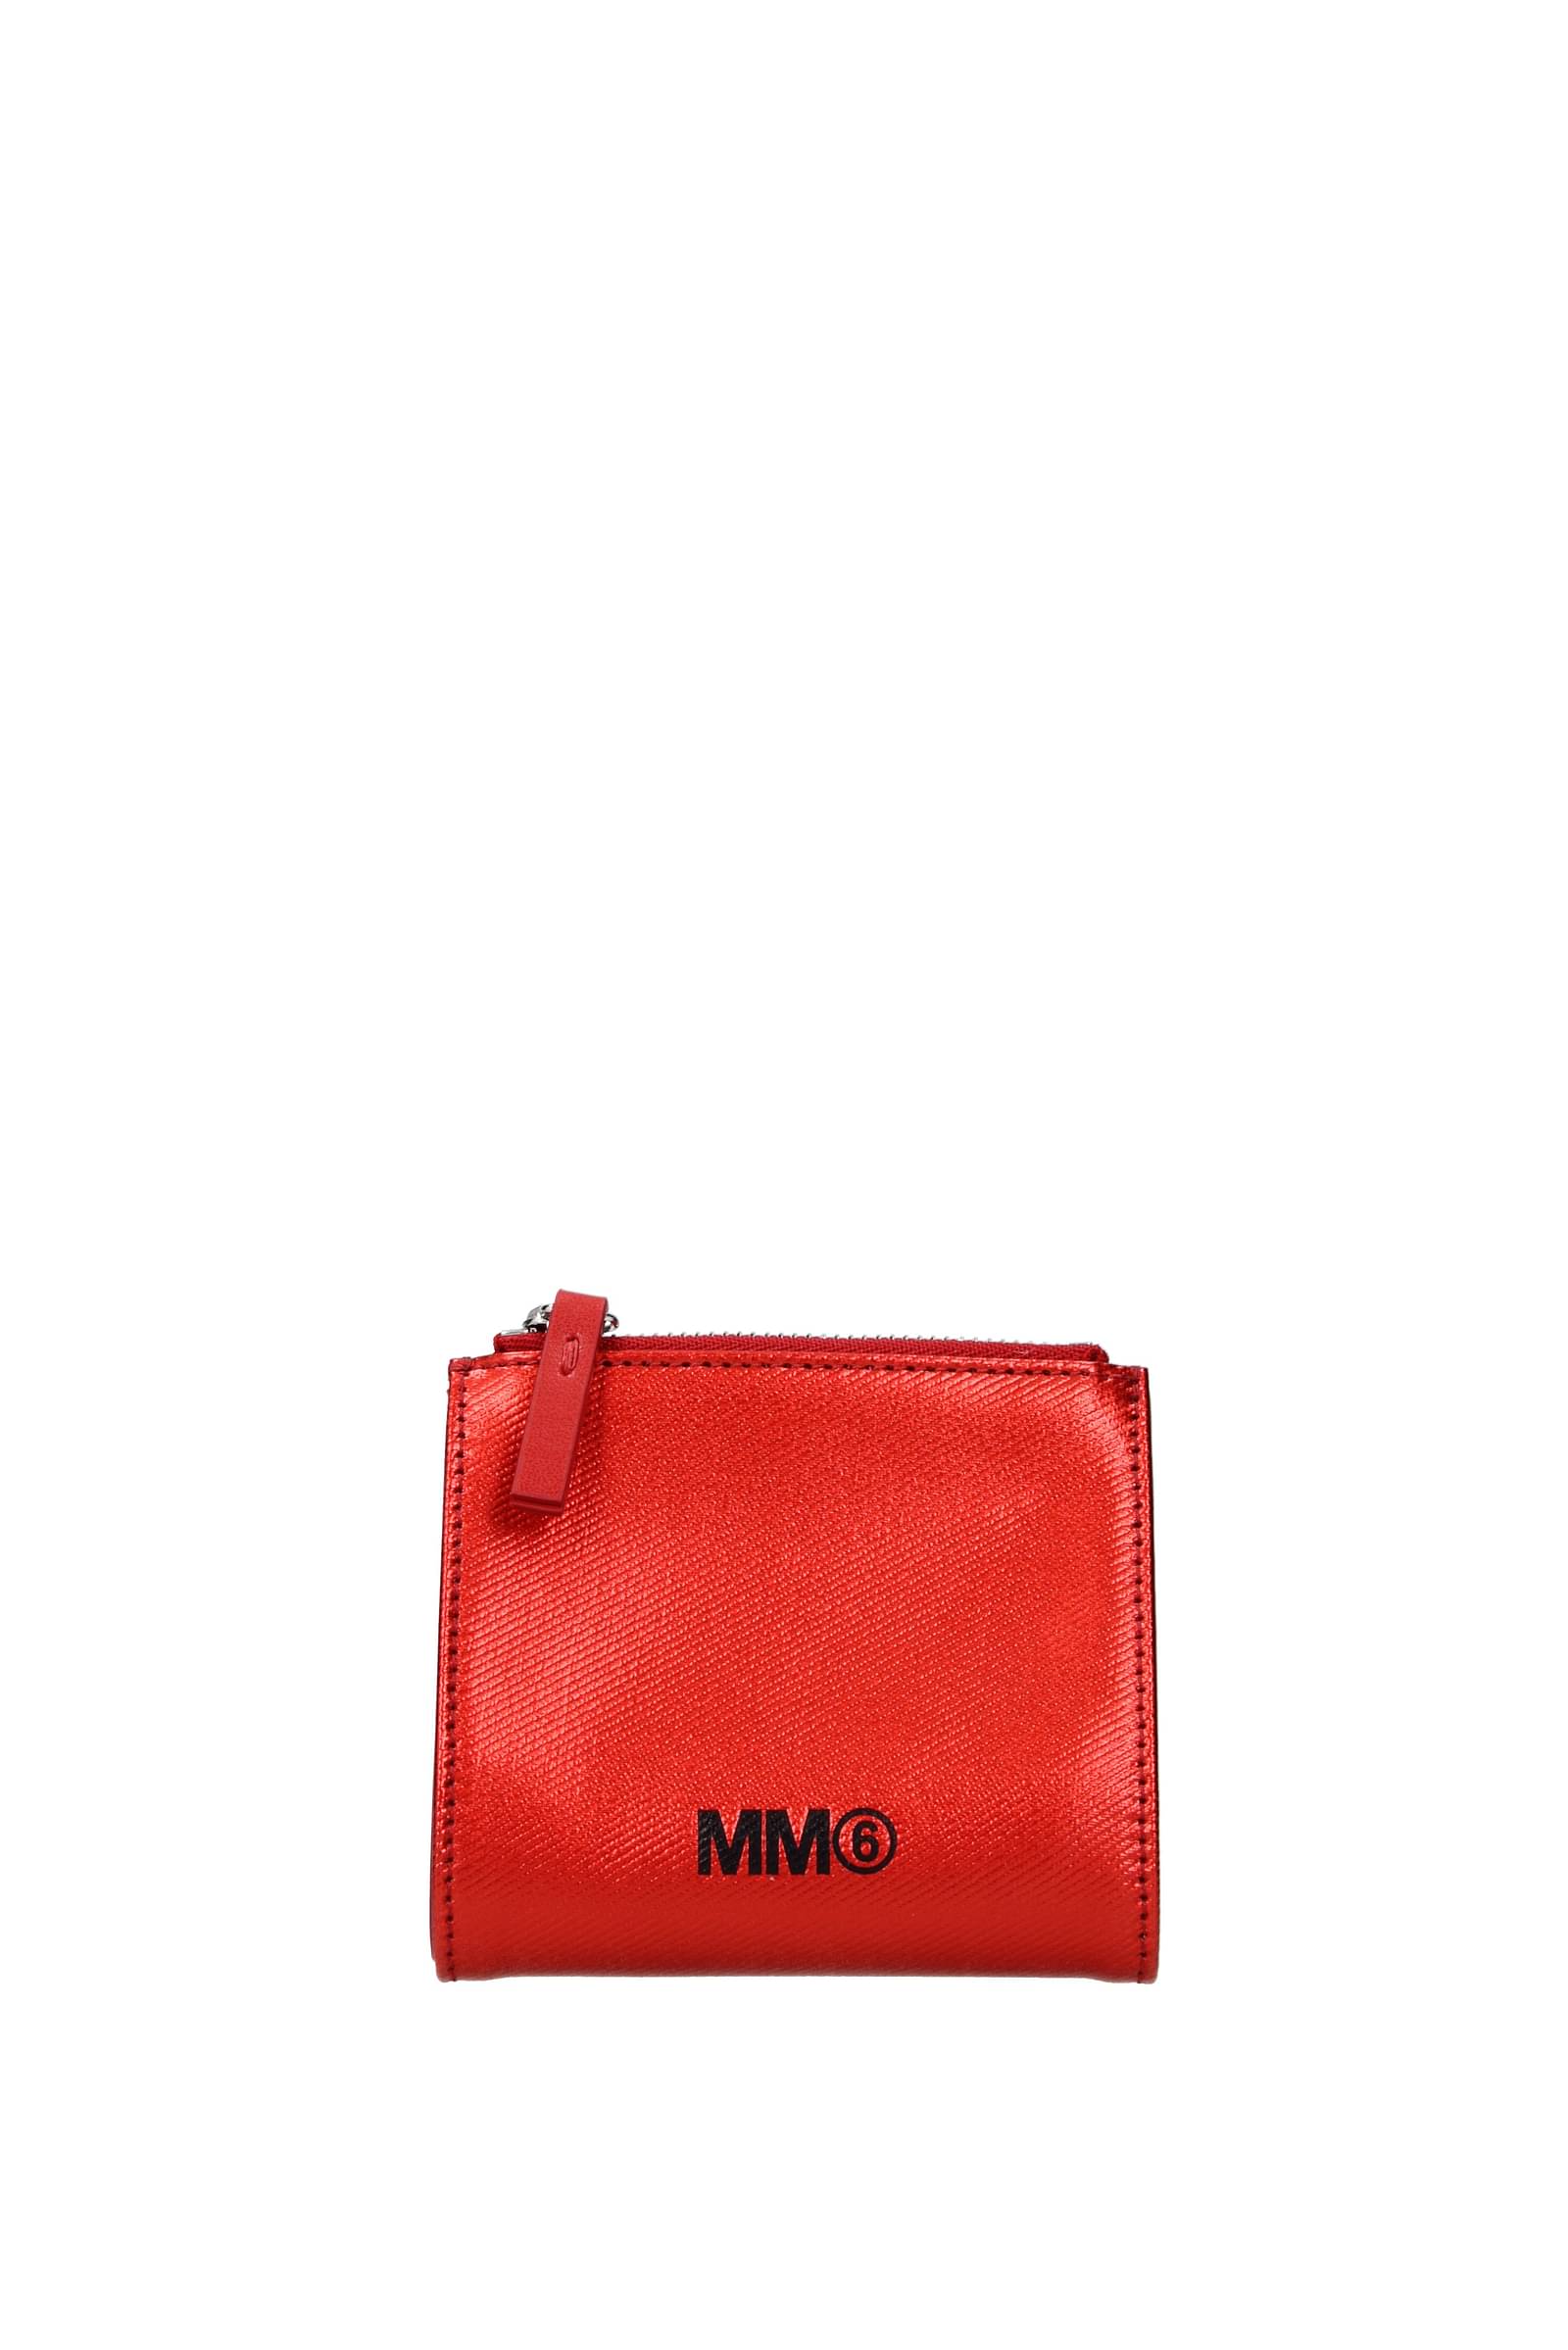 Maison Margiela Wallets mm6 Women Leather Red